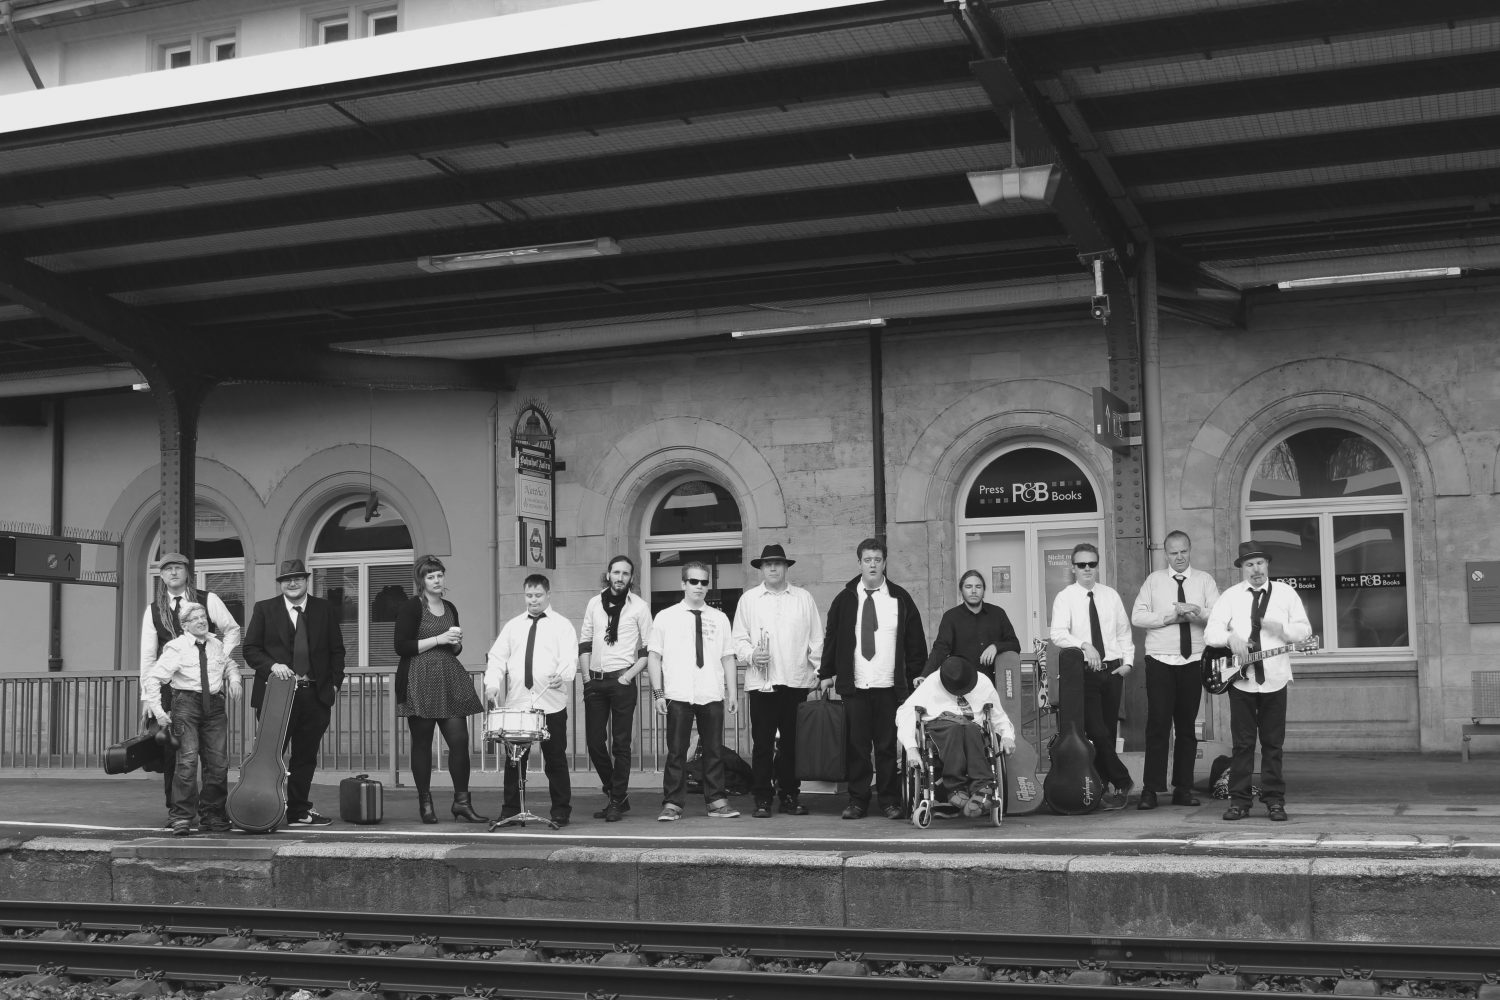 Schwarz weiss Foto von 14 Mitgliedern der Band auf einem Bahnsteig, fast alle mit weißen Hemden und Schlipsen, einer im Rollstuhl, einige mit Instrumentenkoffern.